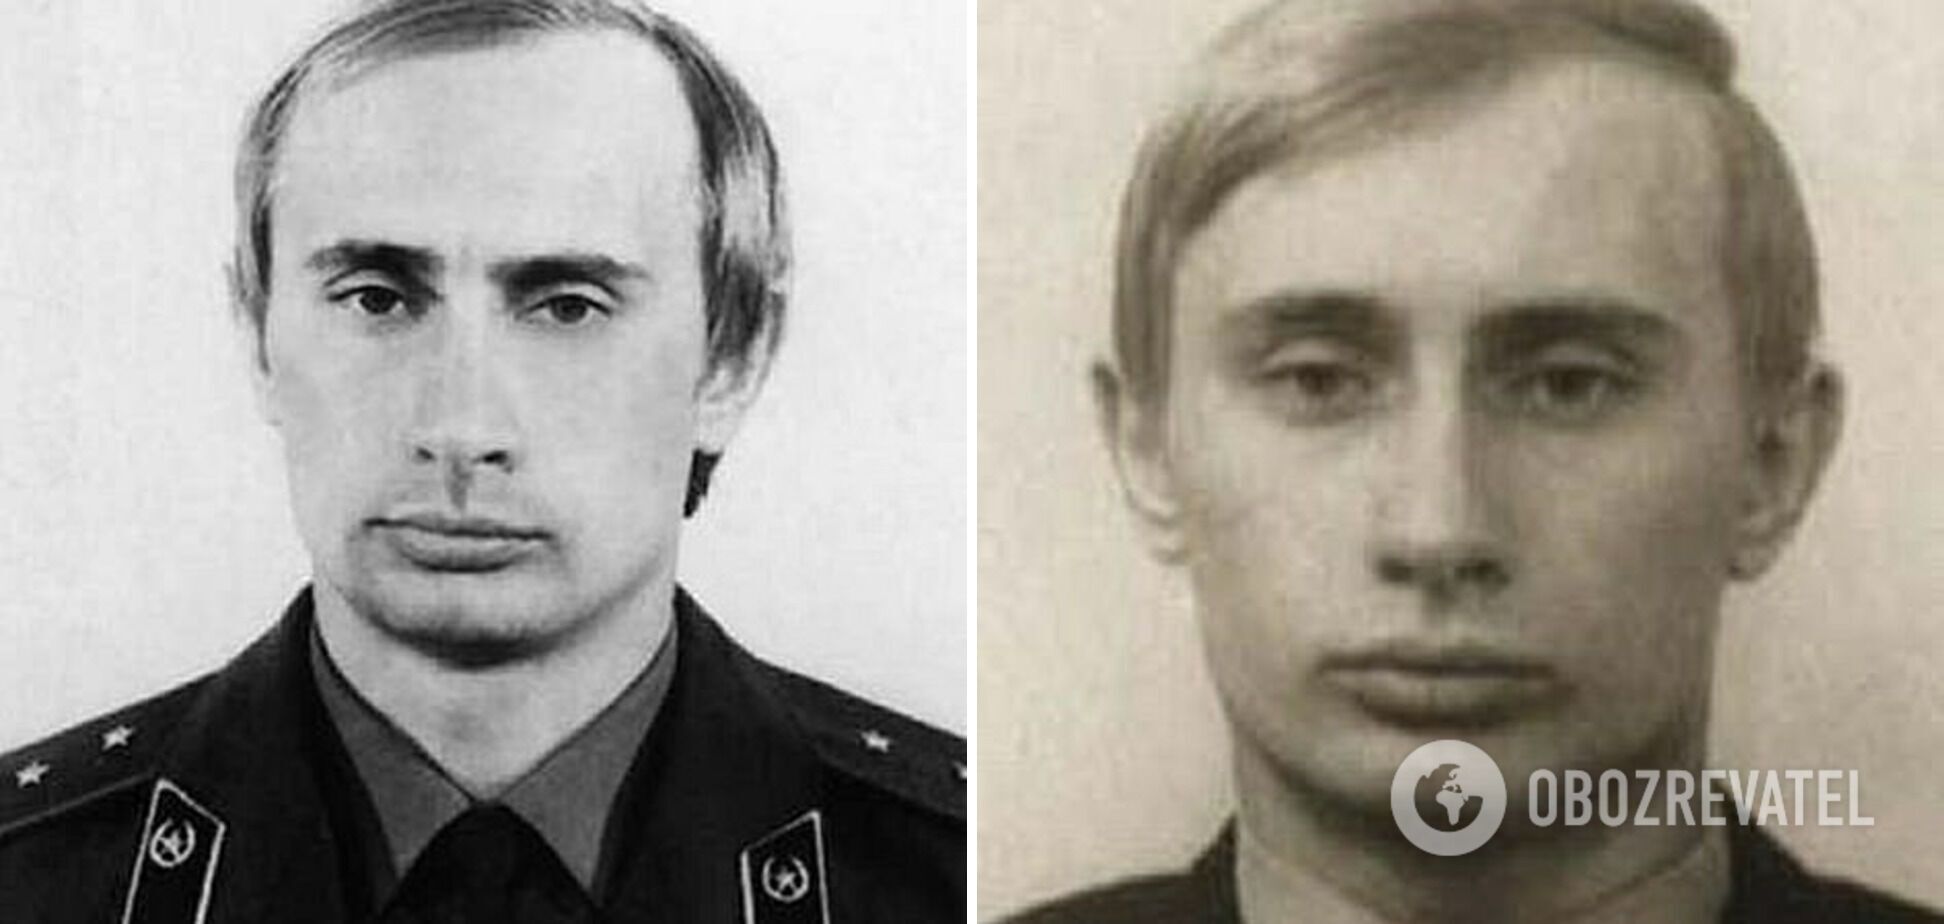 Как выглядел Путин во время службы в КГБ.